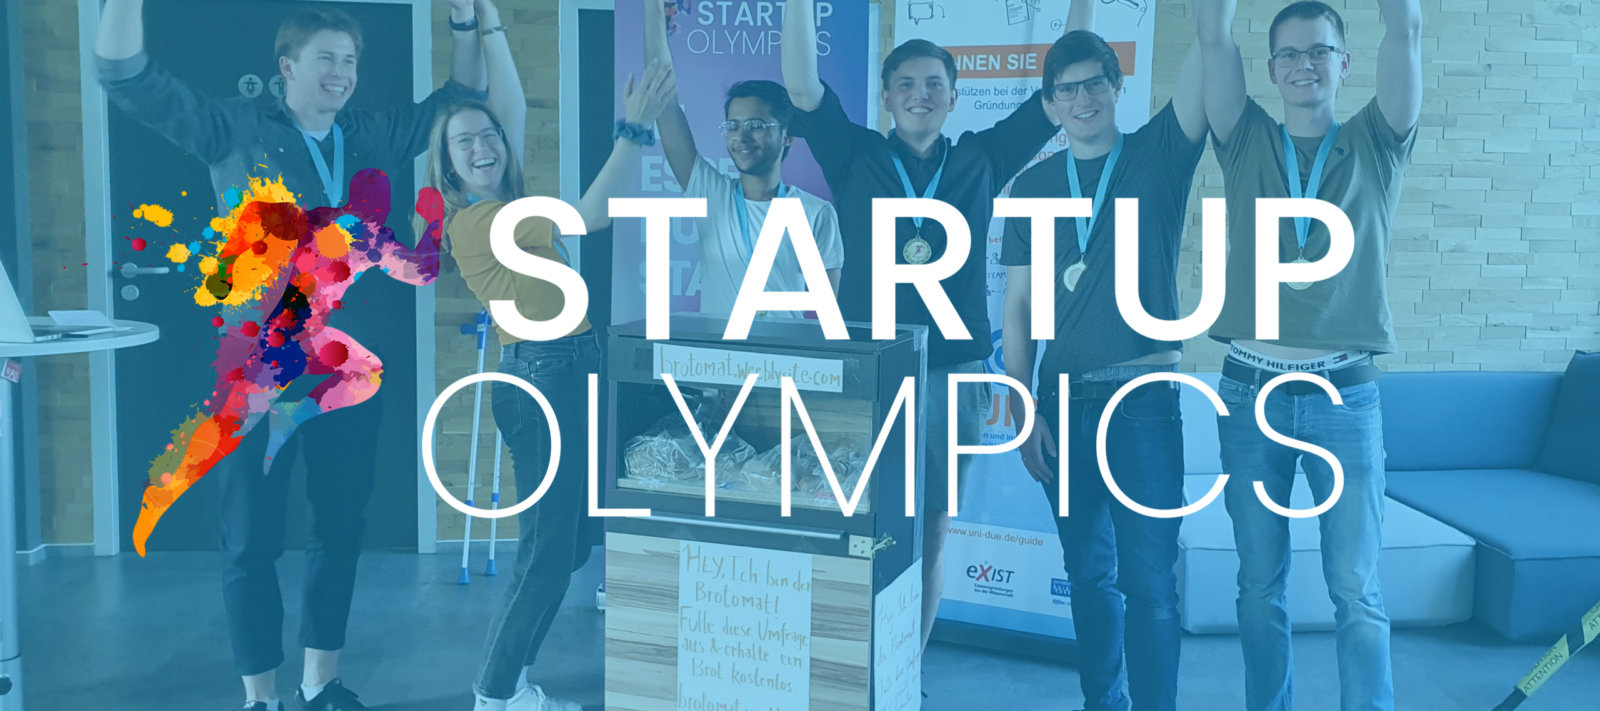 Startup-Essen – STARTUP OLYMPICS: Aus kreativen Ideen werden spannende Start-up-Konzepte